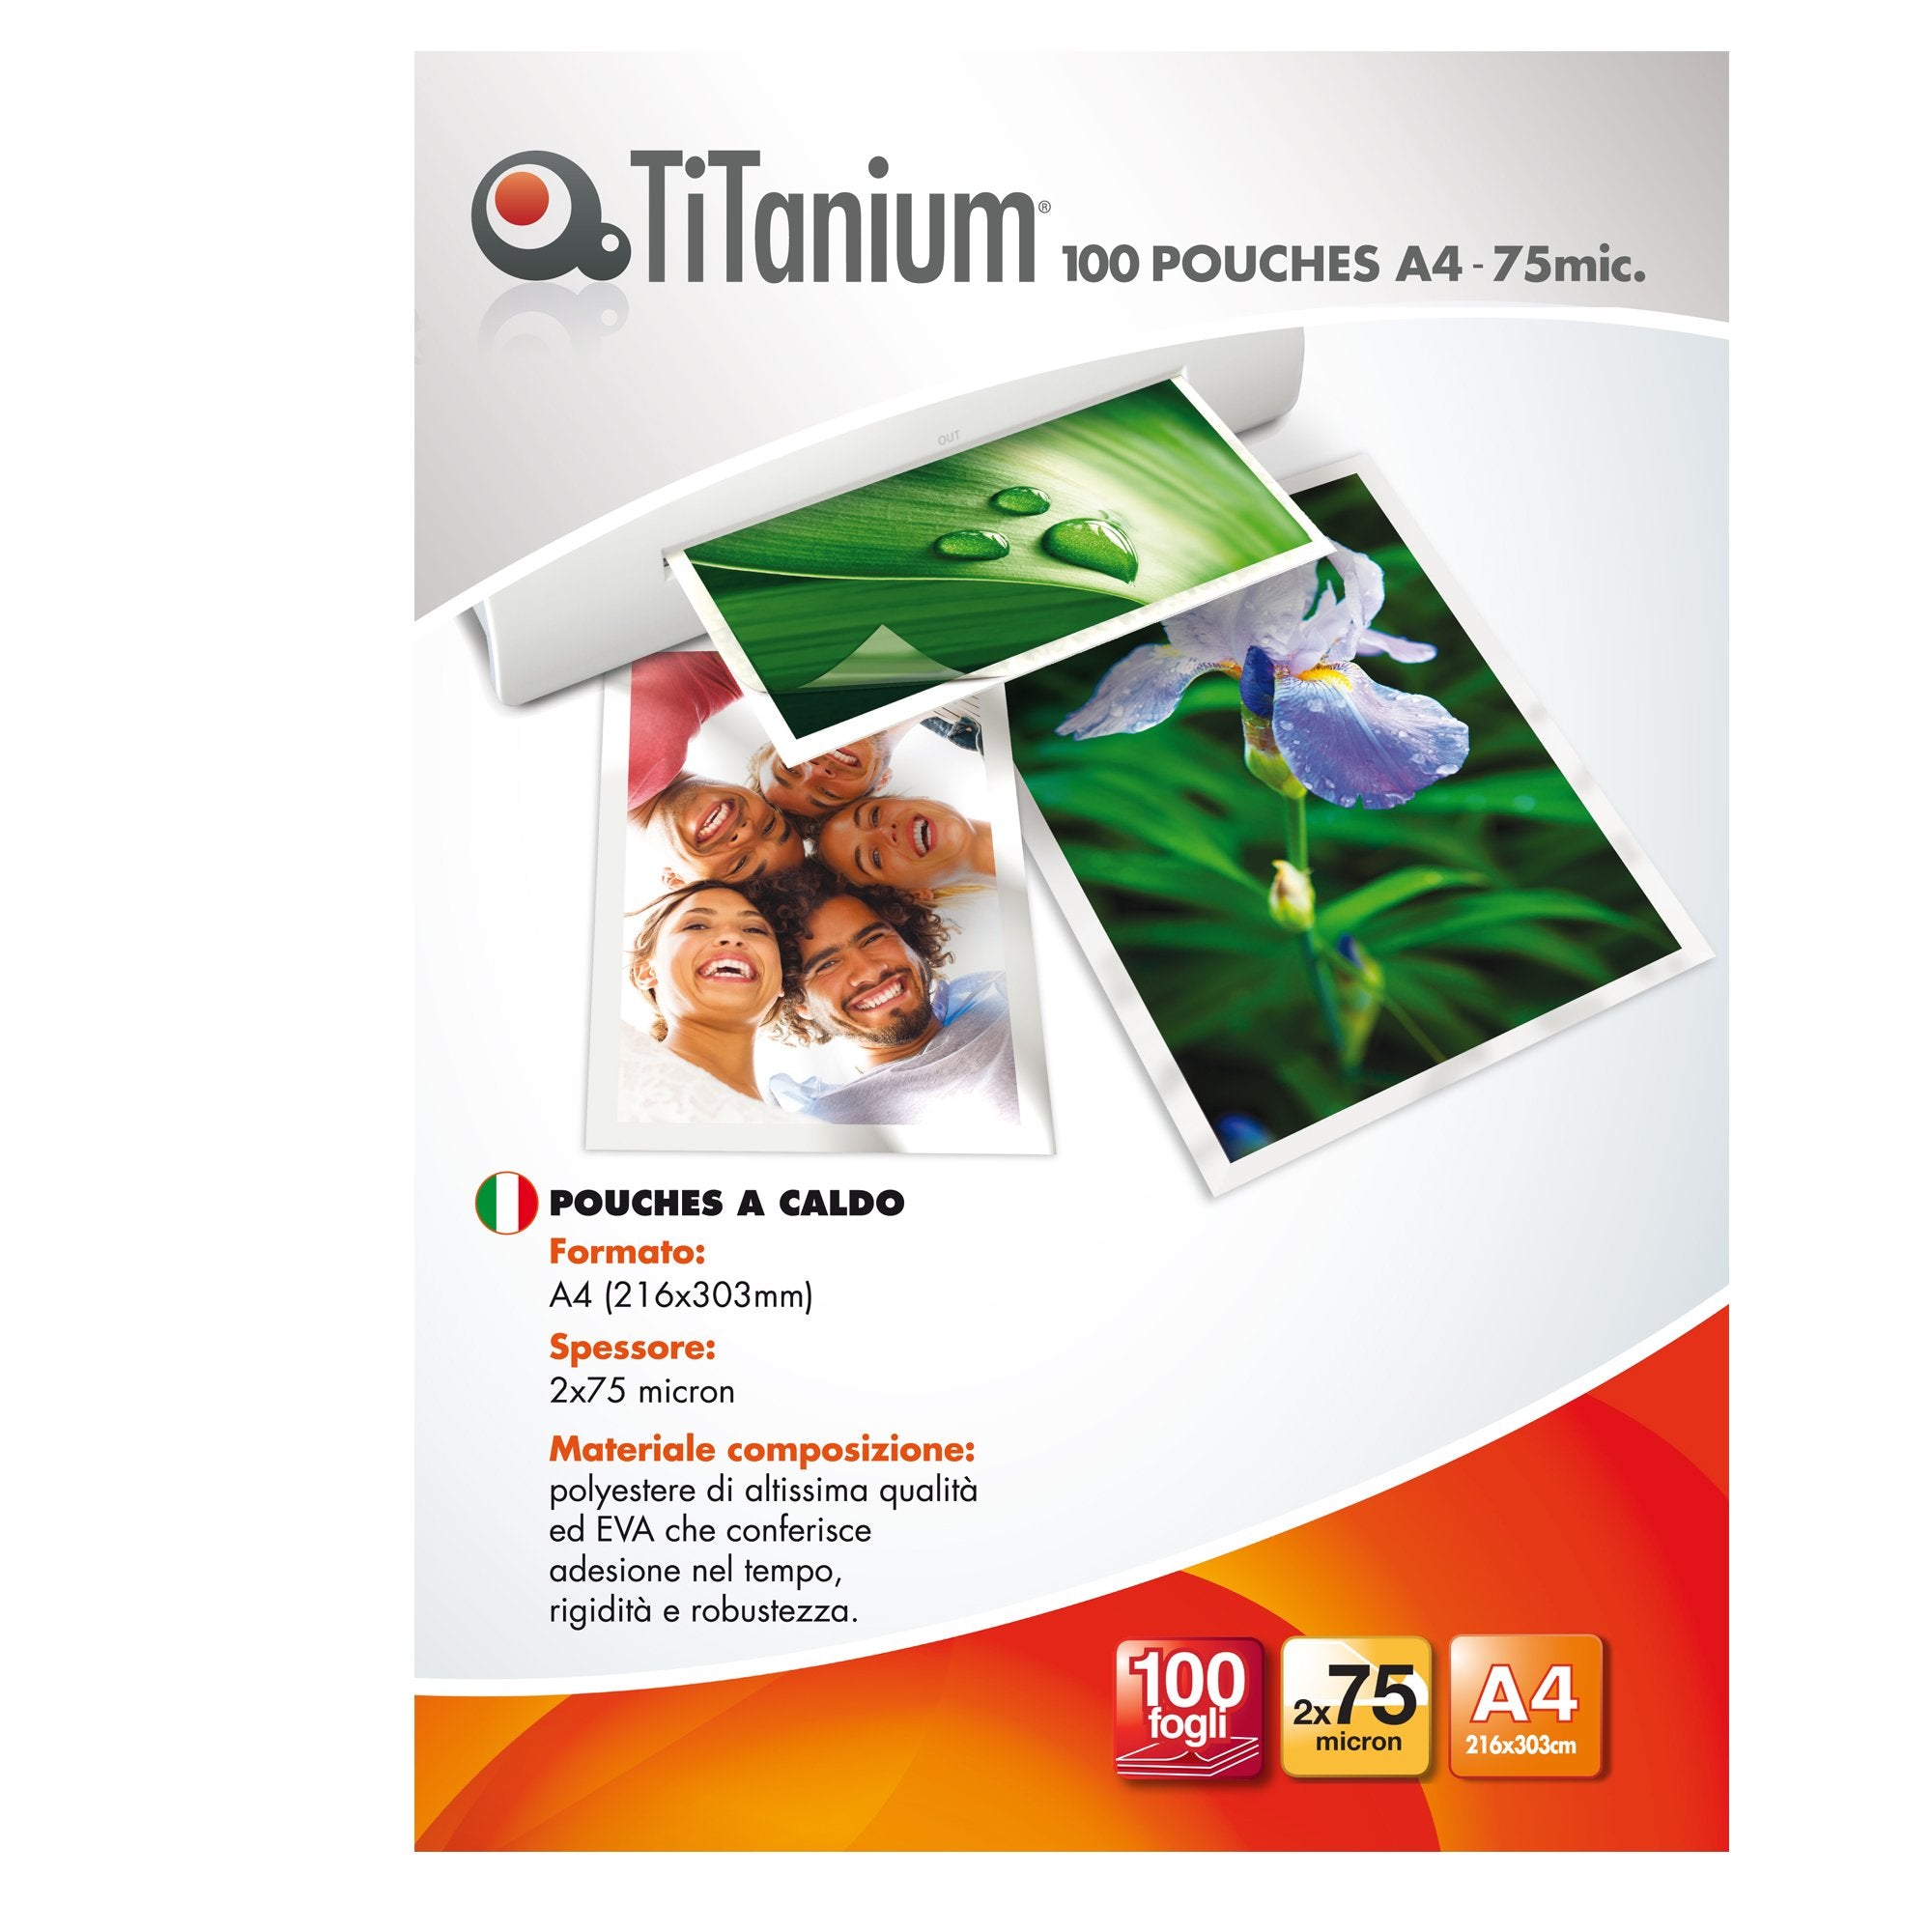 titanium-100-pouches-216x303mm-a4-75my